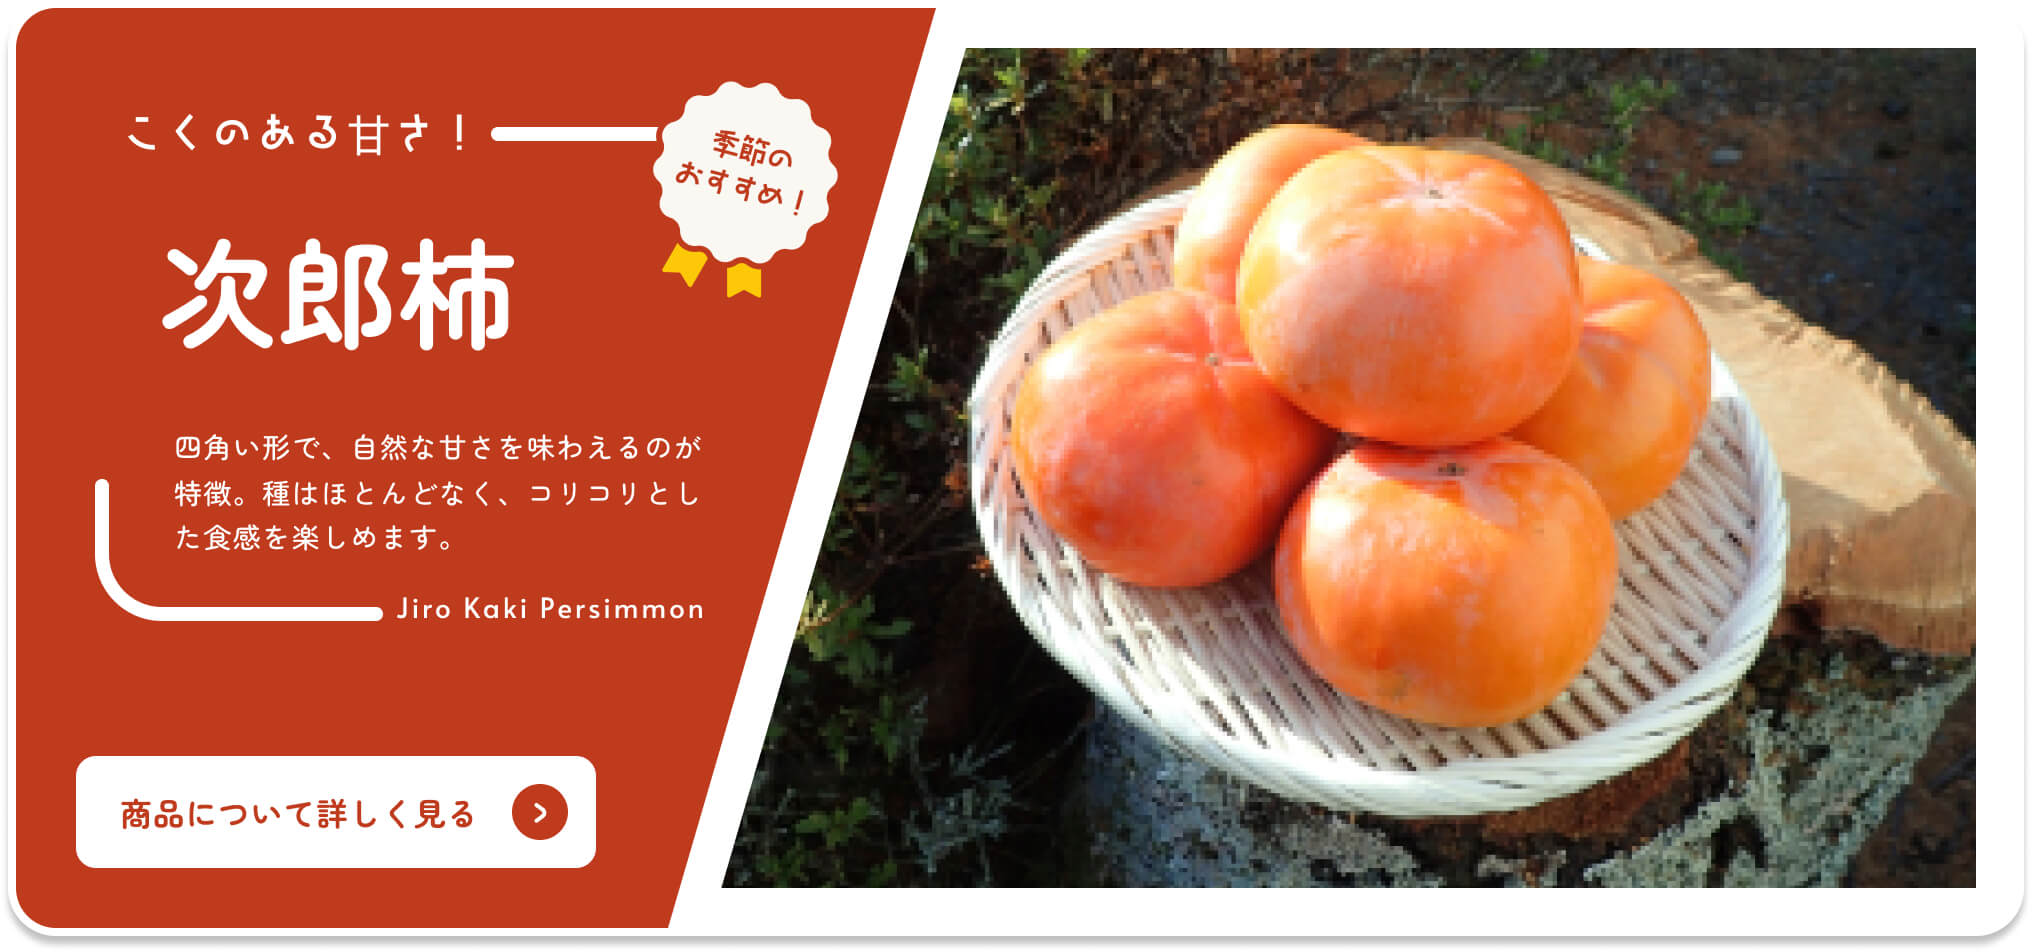 Por Shizuoka Catálogo en línea Recomendación de temporada Caqui Jiro